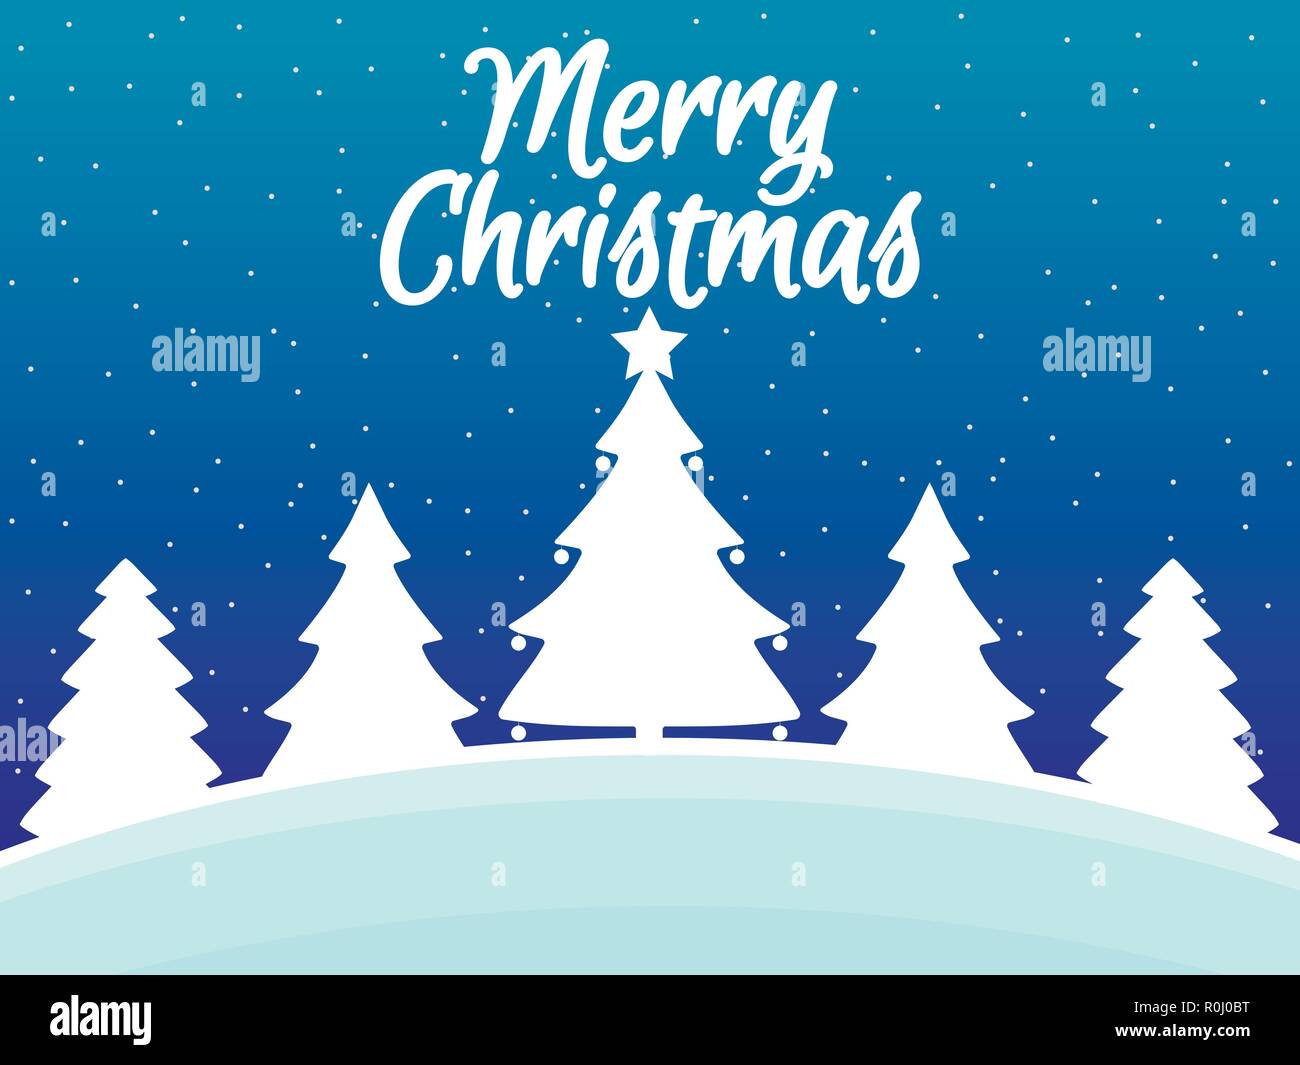 Buon Natale Con La Neve.Auguri Di Buon Natale Paesaggio Invernale Con I Fiocchi Di Neve E Alberi Di Natale Sfondo Di Natale Illustrazione Vettoriale Immagine E Vettoriale Alamy